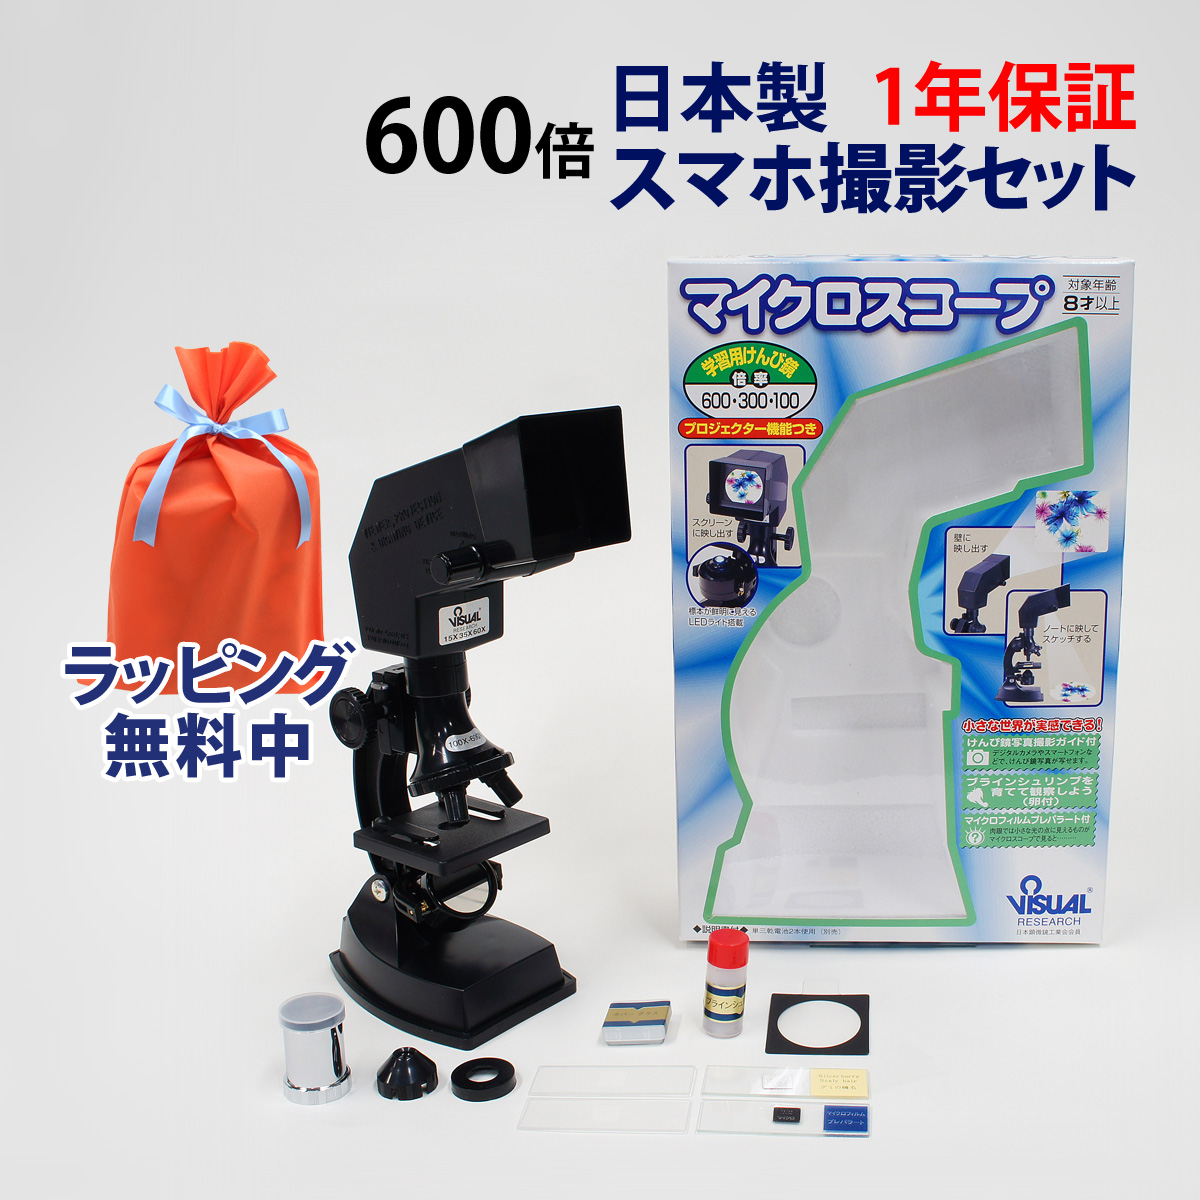 顕微鏡 自由研究 スマホ 小学生 中学生 子供 顕微鏡セット 600倍 300倍 100倍 日本製 観察 生き物 顕微鏡セット スマホ撮影セット 学習 マイクロスコープ プレパラート付 簡単 生物顕微鏡